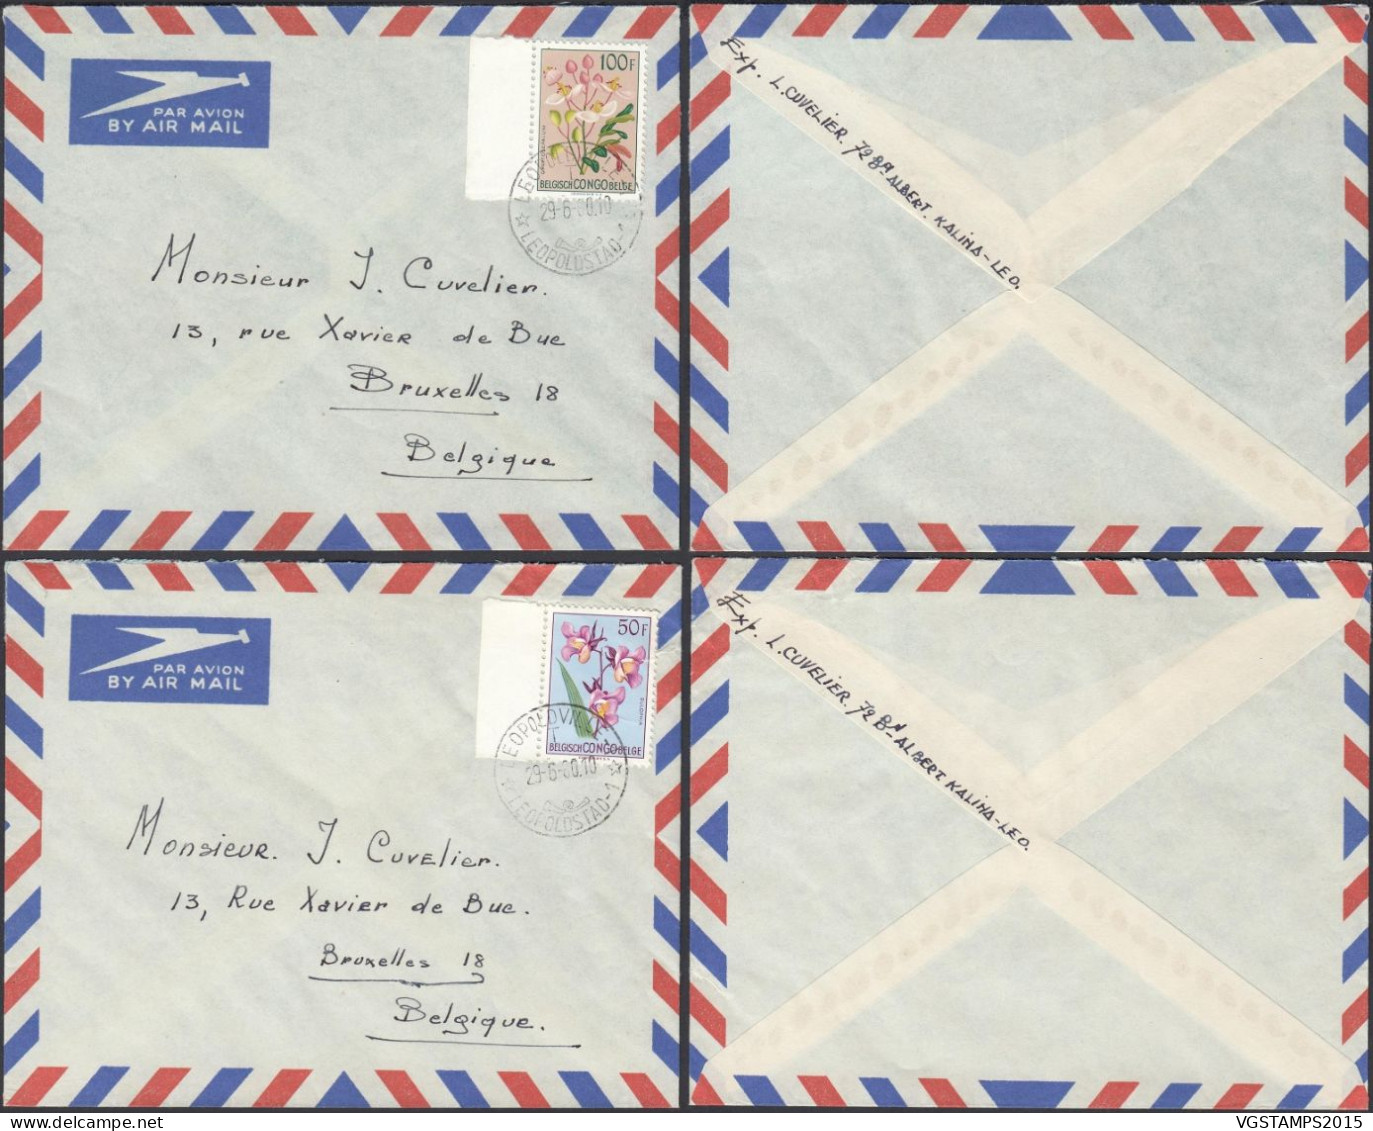 Congo Belge 1960 - 2 Lettres Par Avion. Cob Nr.: 322/3. Du Dernier Jour Du Congo Belge. RARE¡¡¡.... (EB) AR-01891 - Used Stamps